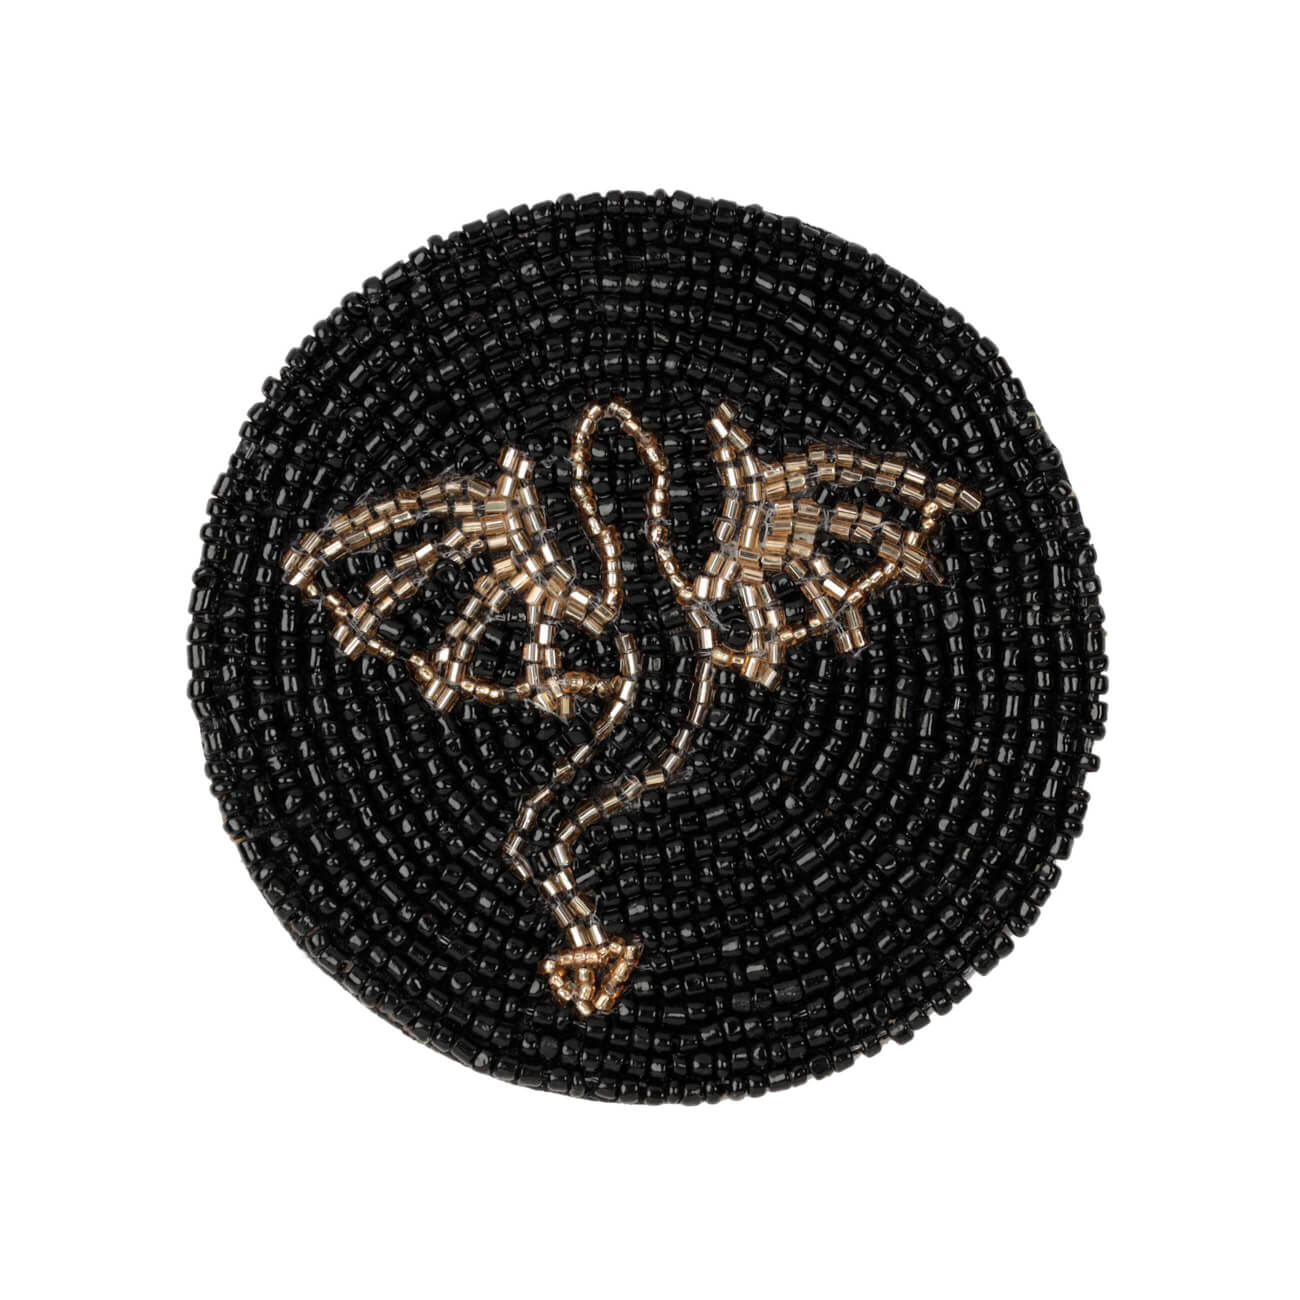 Подставка под кружку, 10 см, бисер, круглая, черная, Дракон, Art beads подставка под кружку 10 см бисер круглая черная дракон art beads